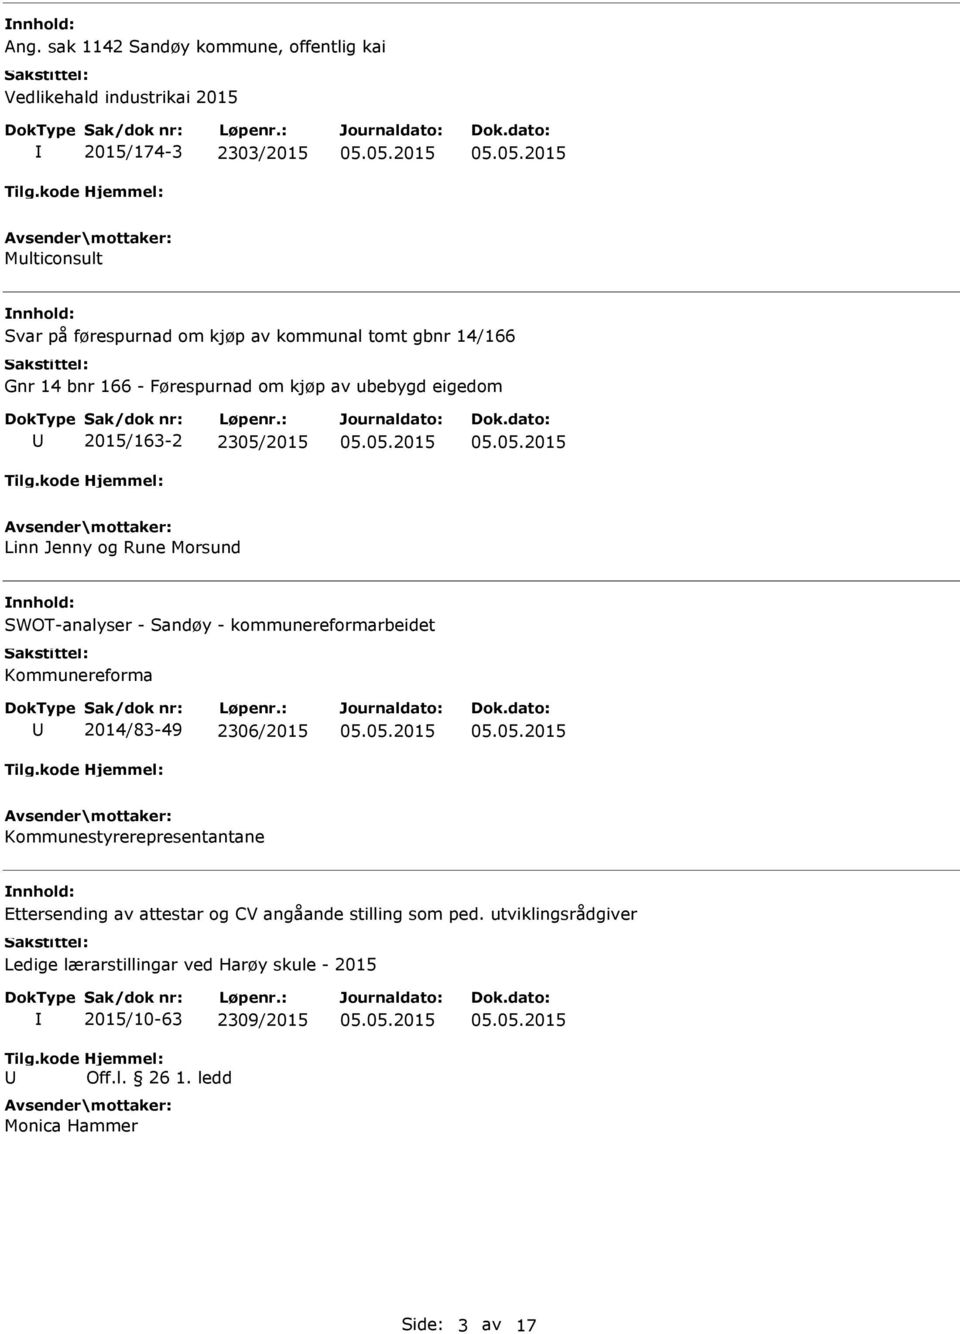 SWOT-analyser - Sandøy - kommunereformarbeidet Kommunereforma 2014/83-49 2306/2015 Kommunestyrerepresentantane Ettersending av attestar og CV